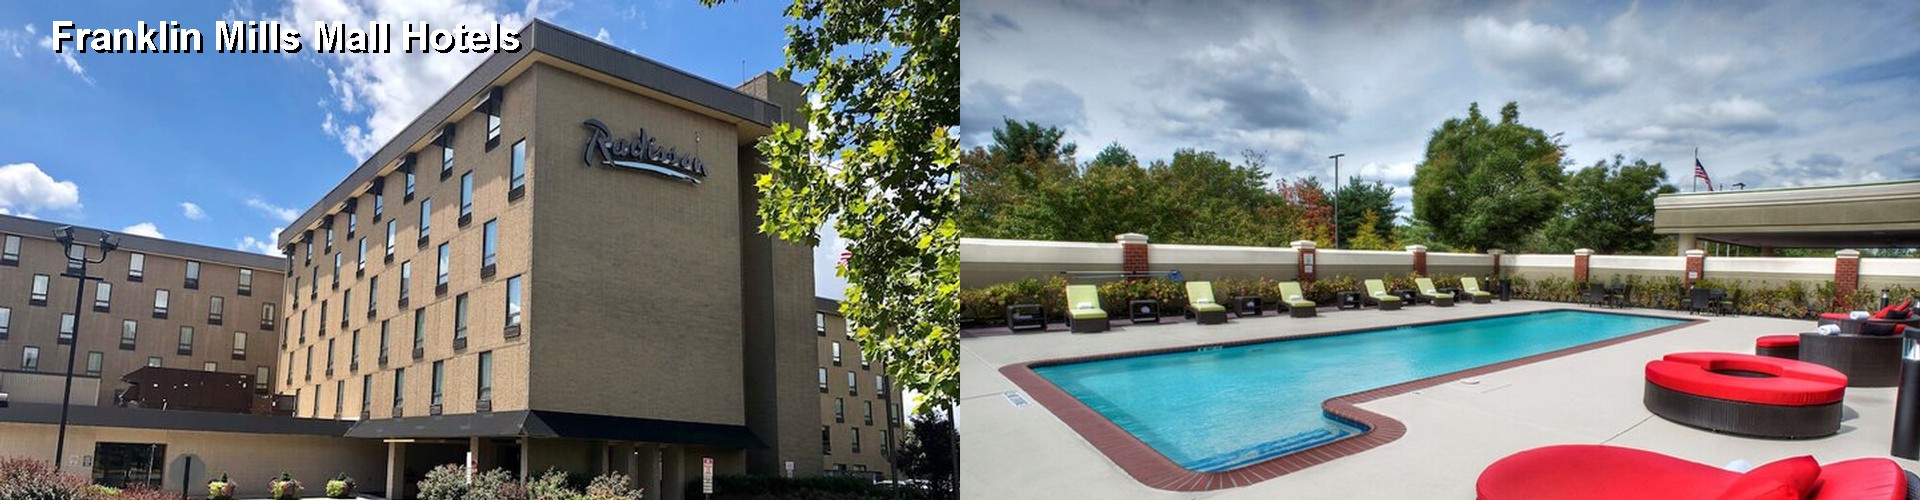 2 Best Hotels near Franklin Mills Mall